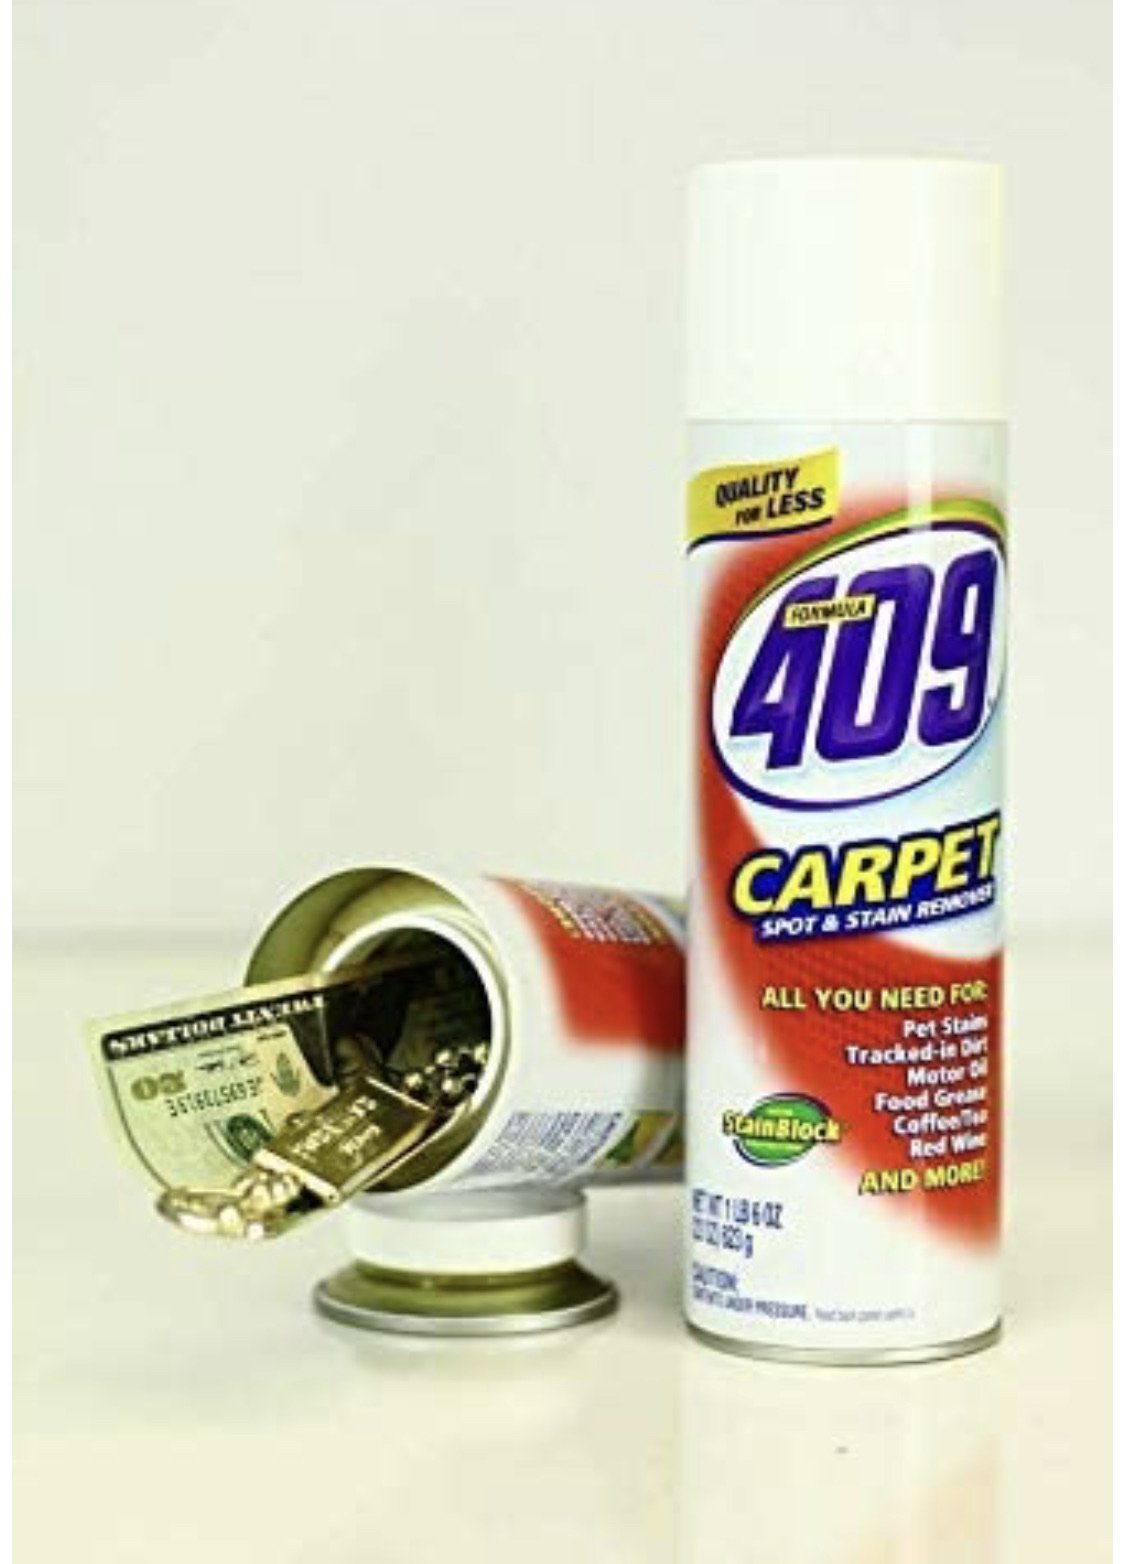 Hidden Safe 409 Carpet Cleaning Home Diversion Safe Stash Safe - Concealment Cans